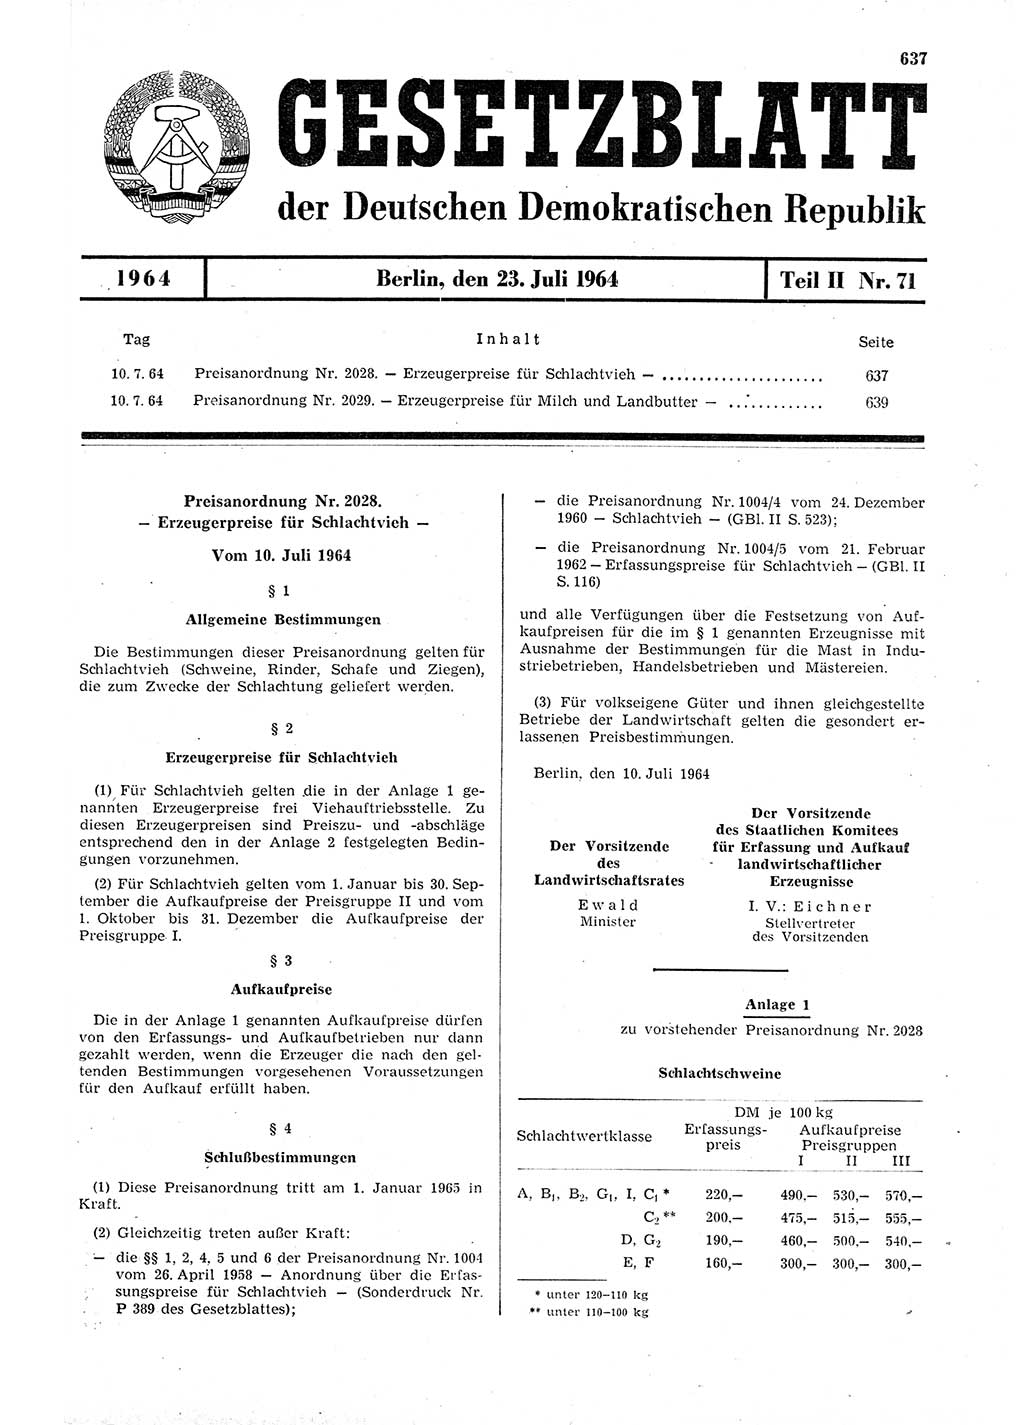 Gesetzblatt (GBl.) der Deutschen Demokratischen Republik (DDR) Teil ⅠⅠ 1964, Seite 637 (GBl. DDR ⅠⅠ 1964, S. 637)